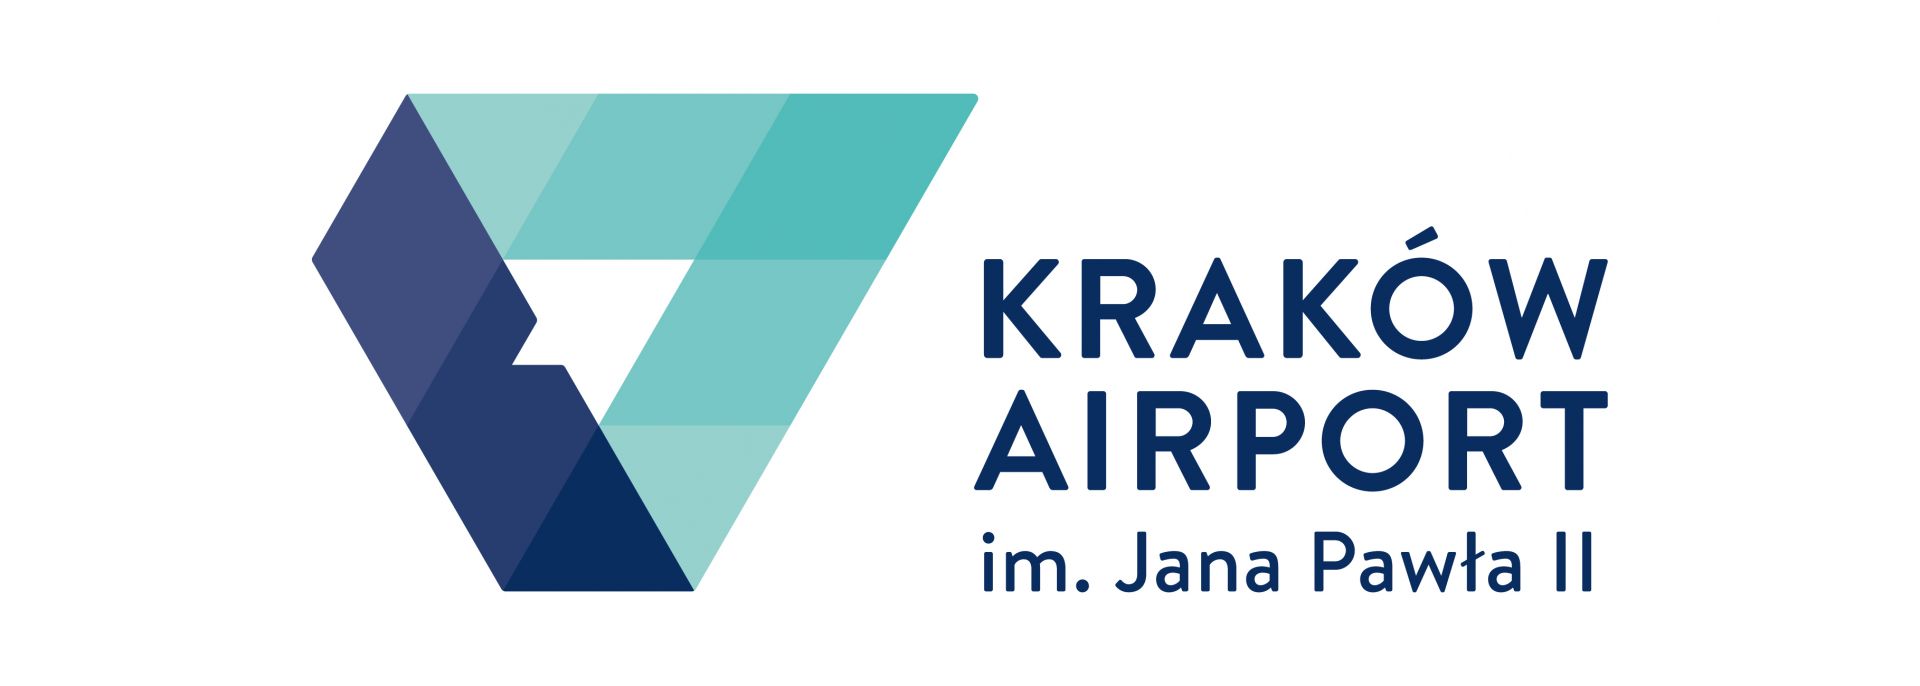 Informacja Lotnisko Balice - informacja o lotnisku w Krakowie